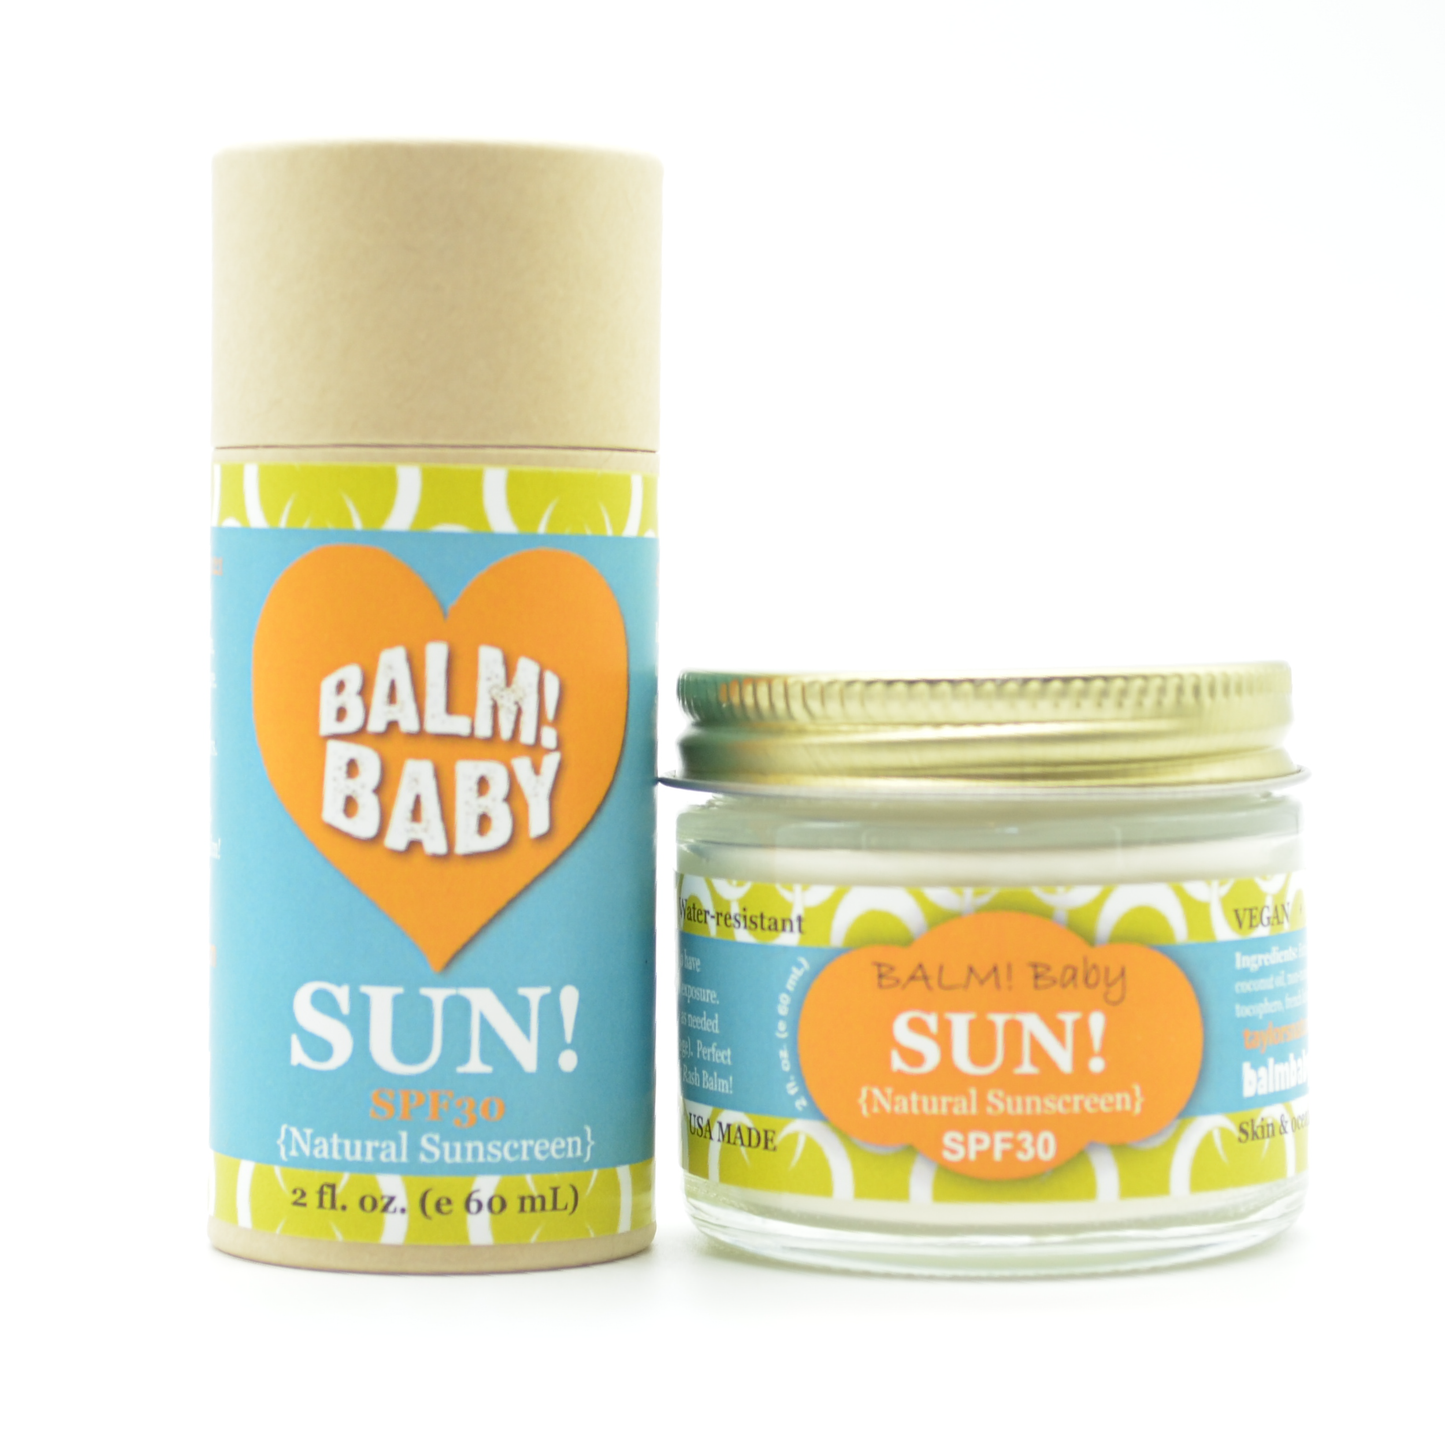 BALM! Baby - SUN 30SPF Natural Mineral Sunscreen- (2oz glass jar)